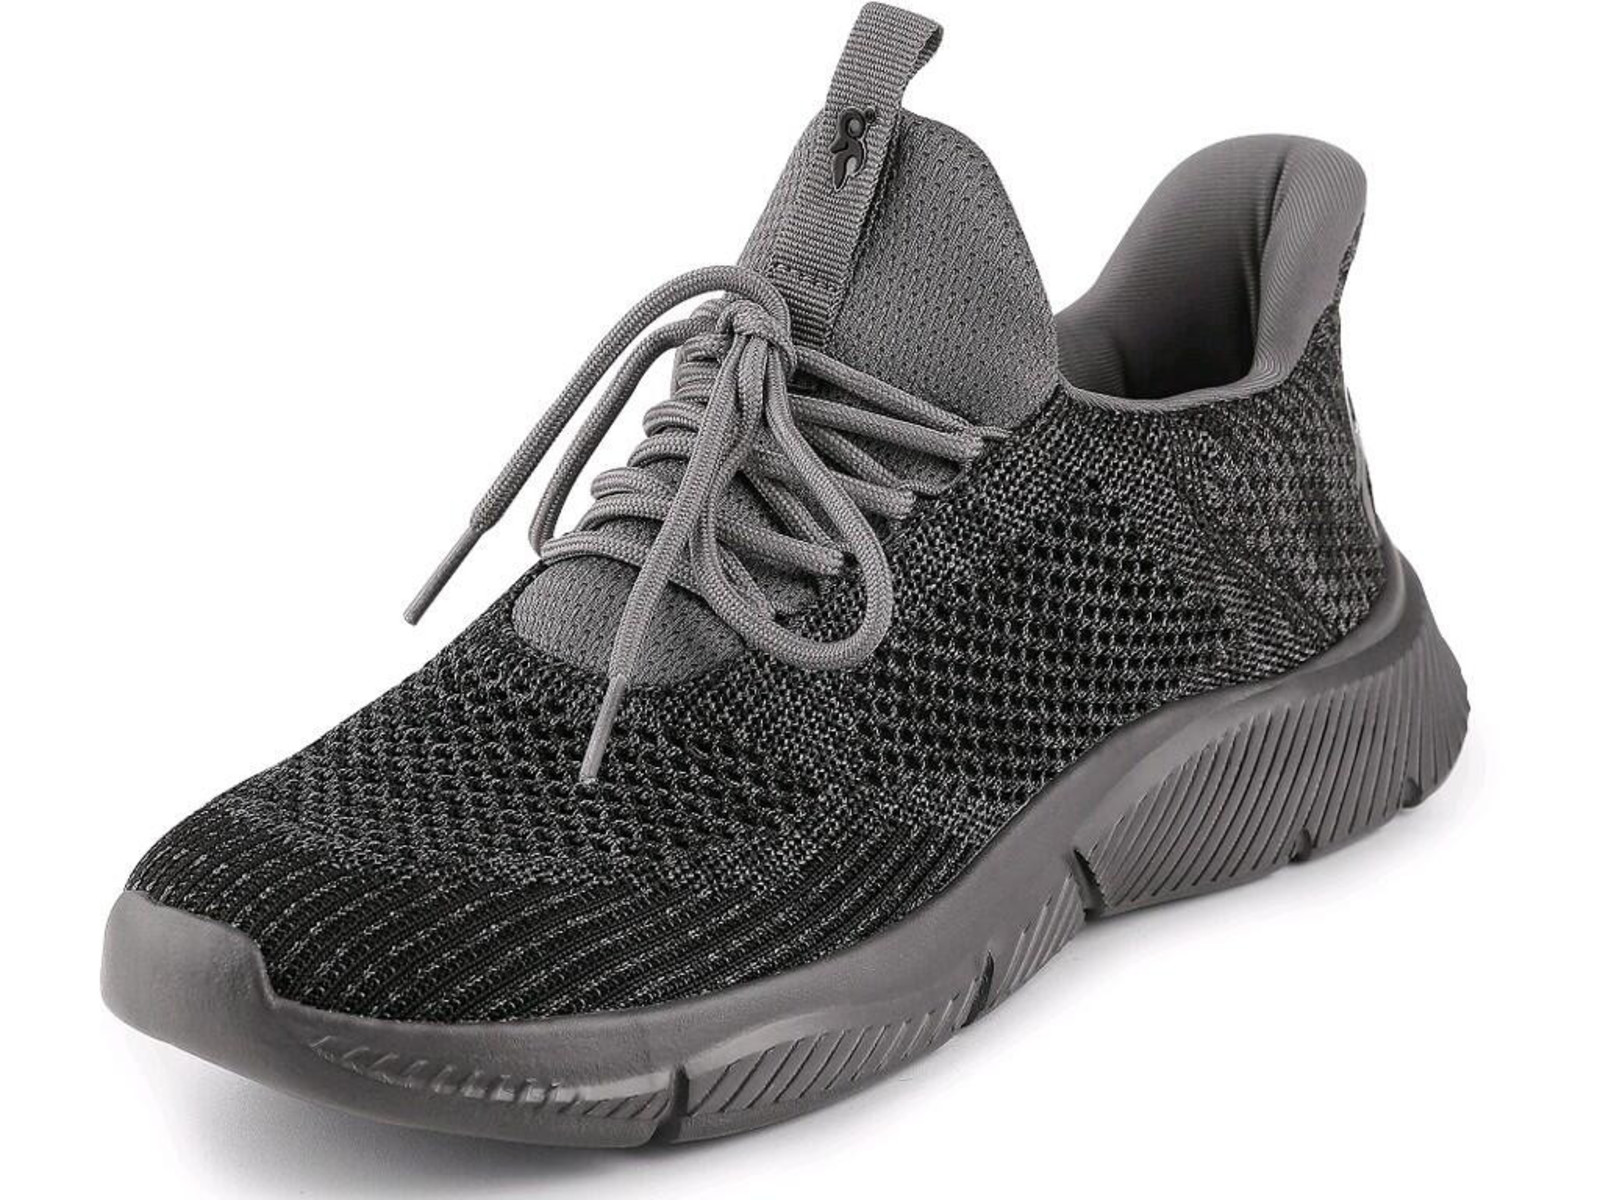 Voľnočasová obuv CXS Island Barbados - veľkosť: 48, farba: sivá/čierna